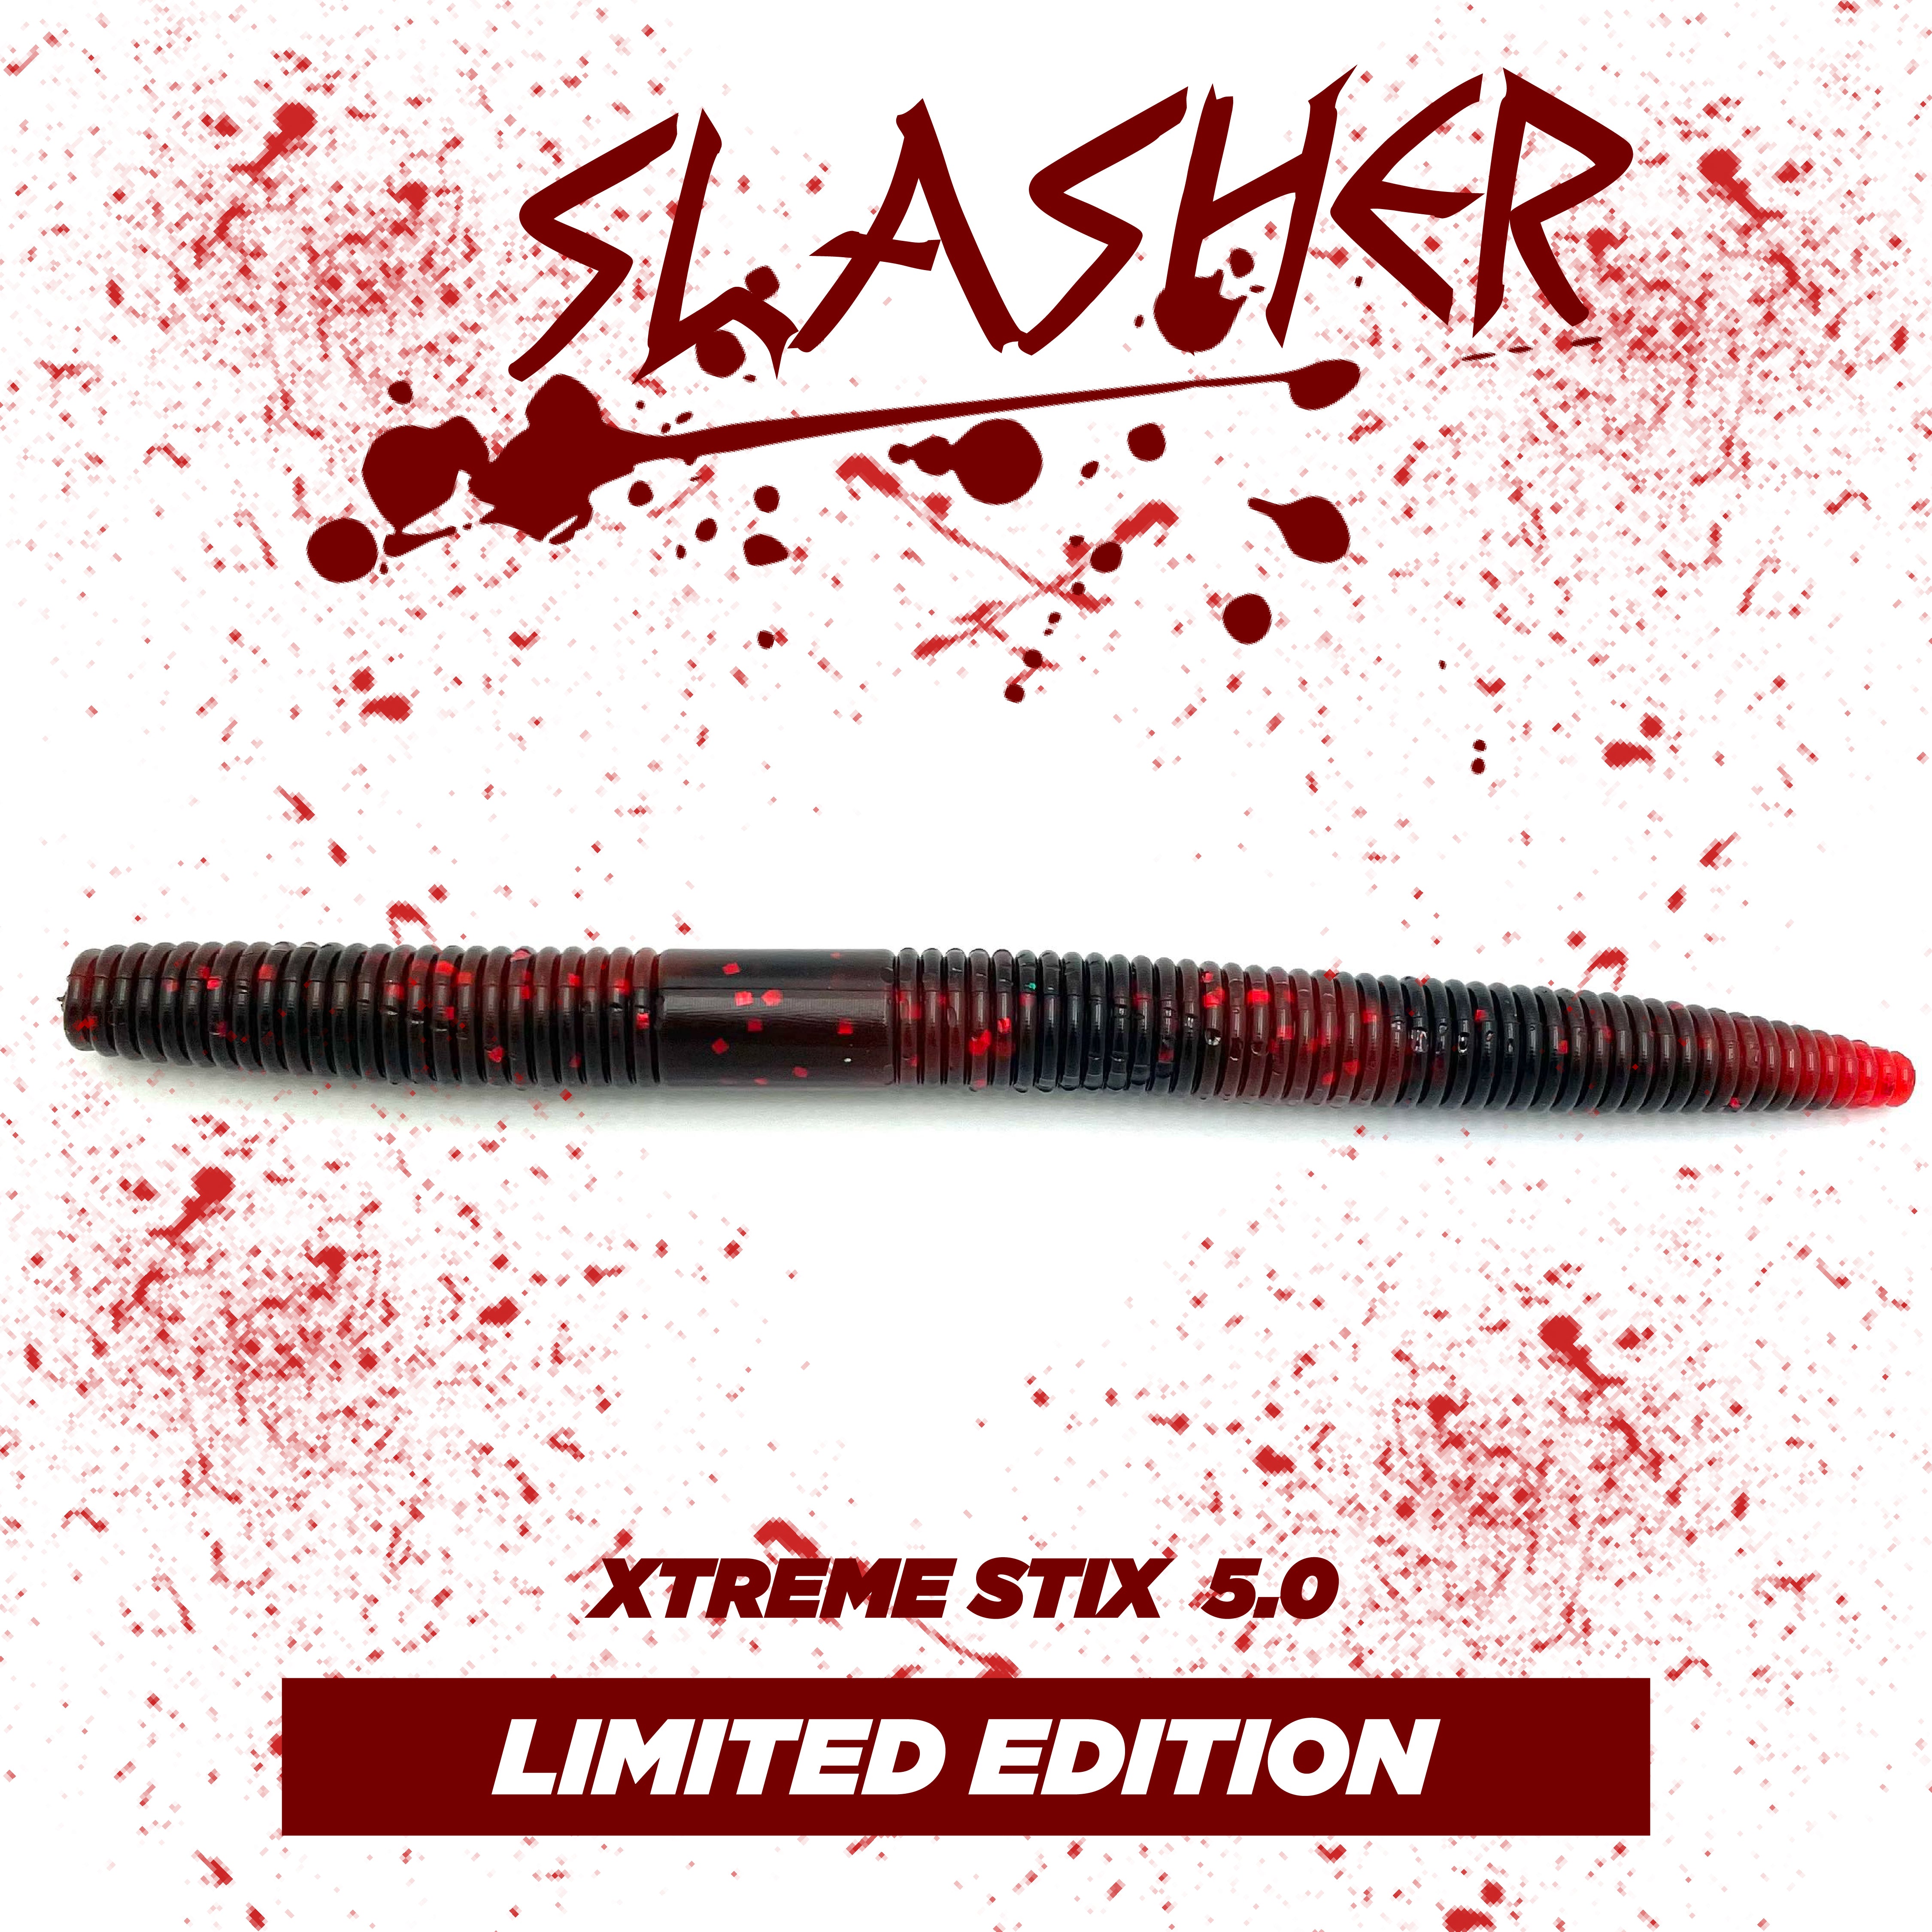 Xtreme Stix 5.0 - Slasher